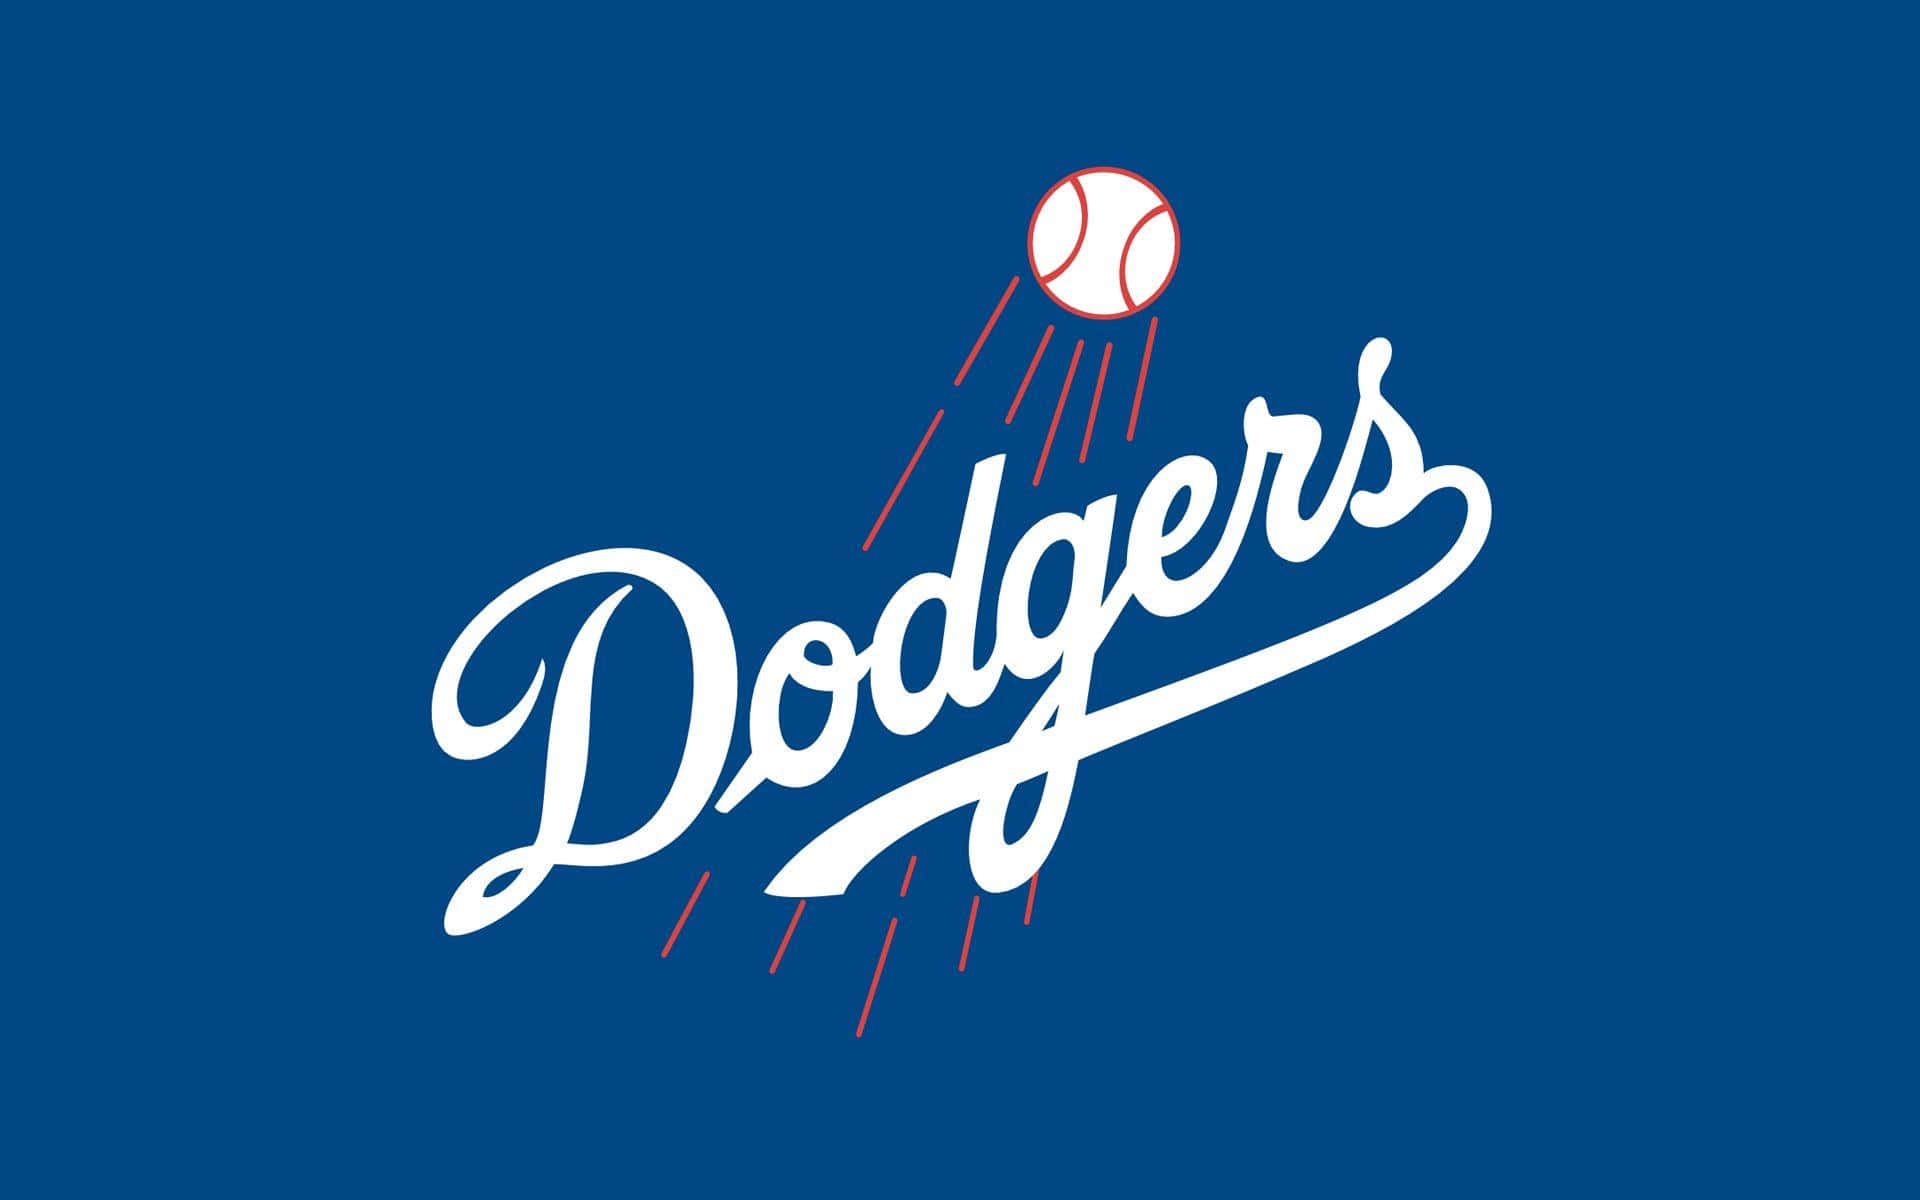 Fondovibrante Del Logotipo De Los Los Angeles Dodgers.